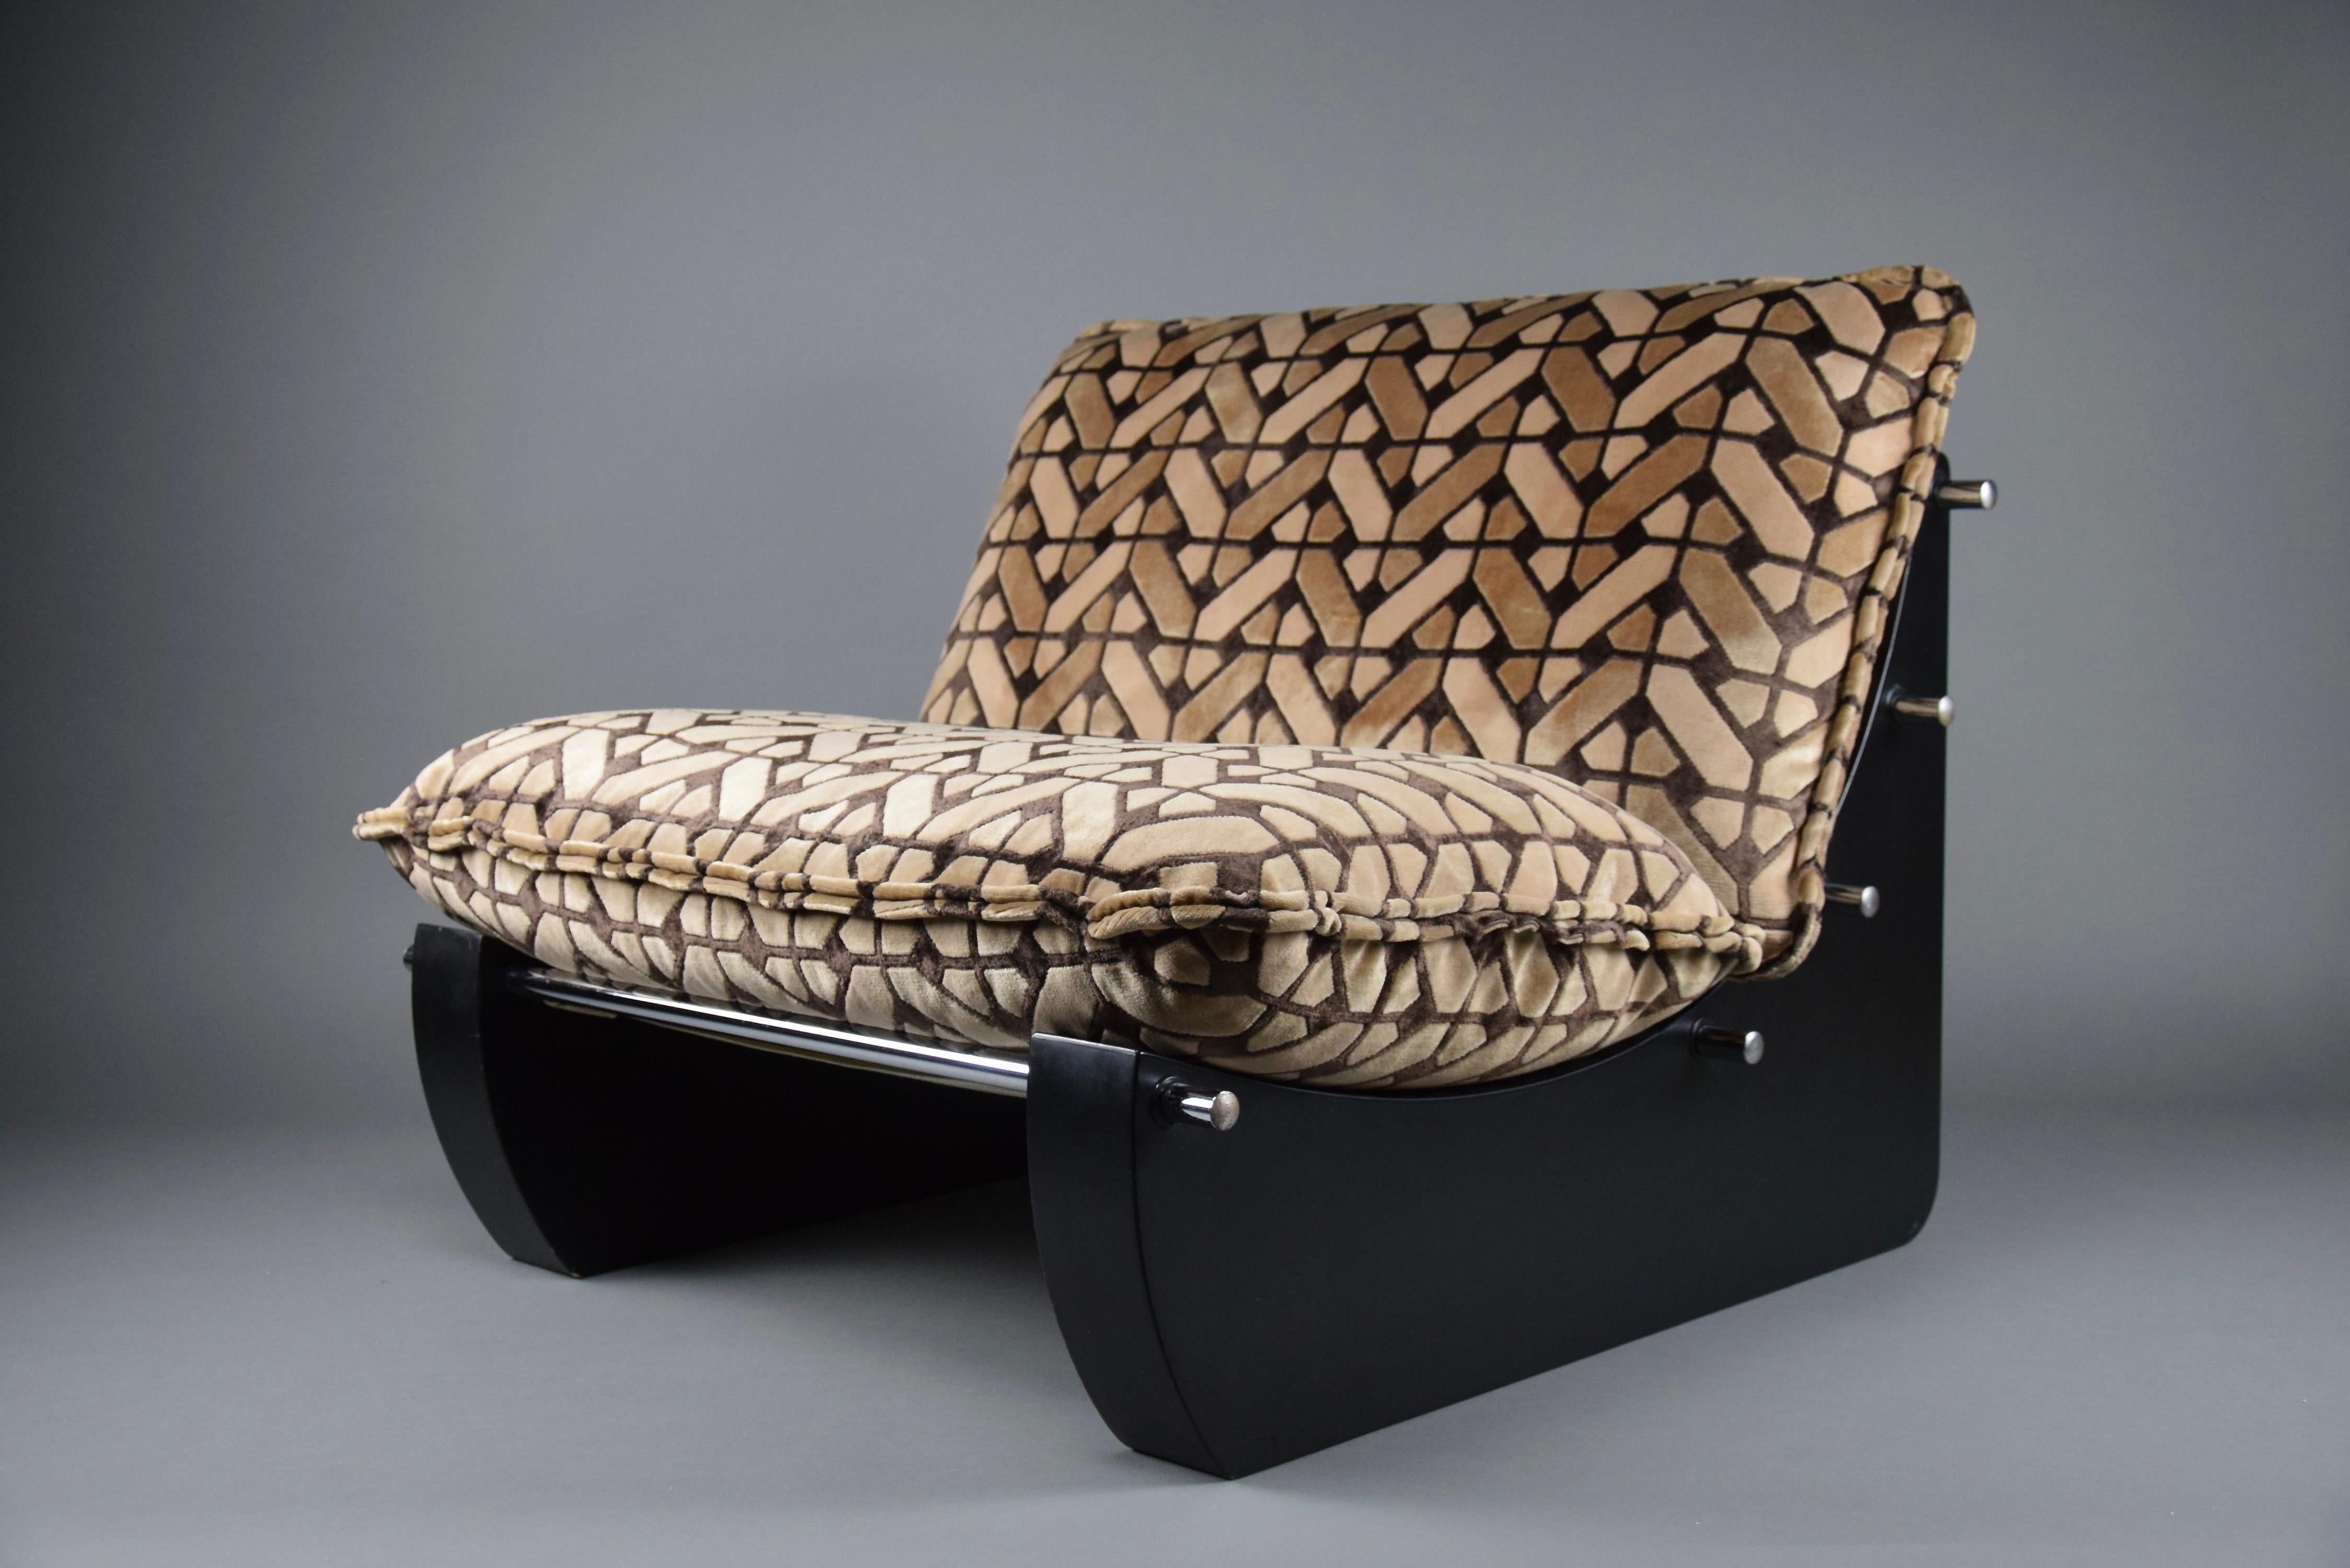 Schöner und äußerst bequemer Sessel aus den späten 1960er- und frühen 1970er-Jahren, entworfen von Giuseppe Munari für Poltrone Munari.
Originalpolsterung in sehr gutem Zustand.
Der Stuhl wird in einer maßgefertigten Holzkiste versichert nach